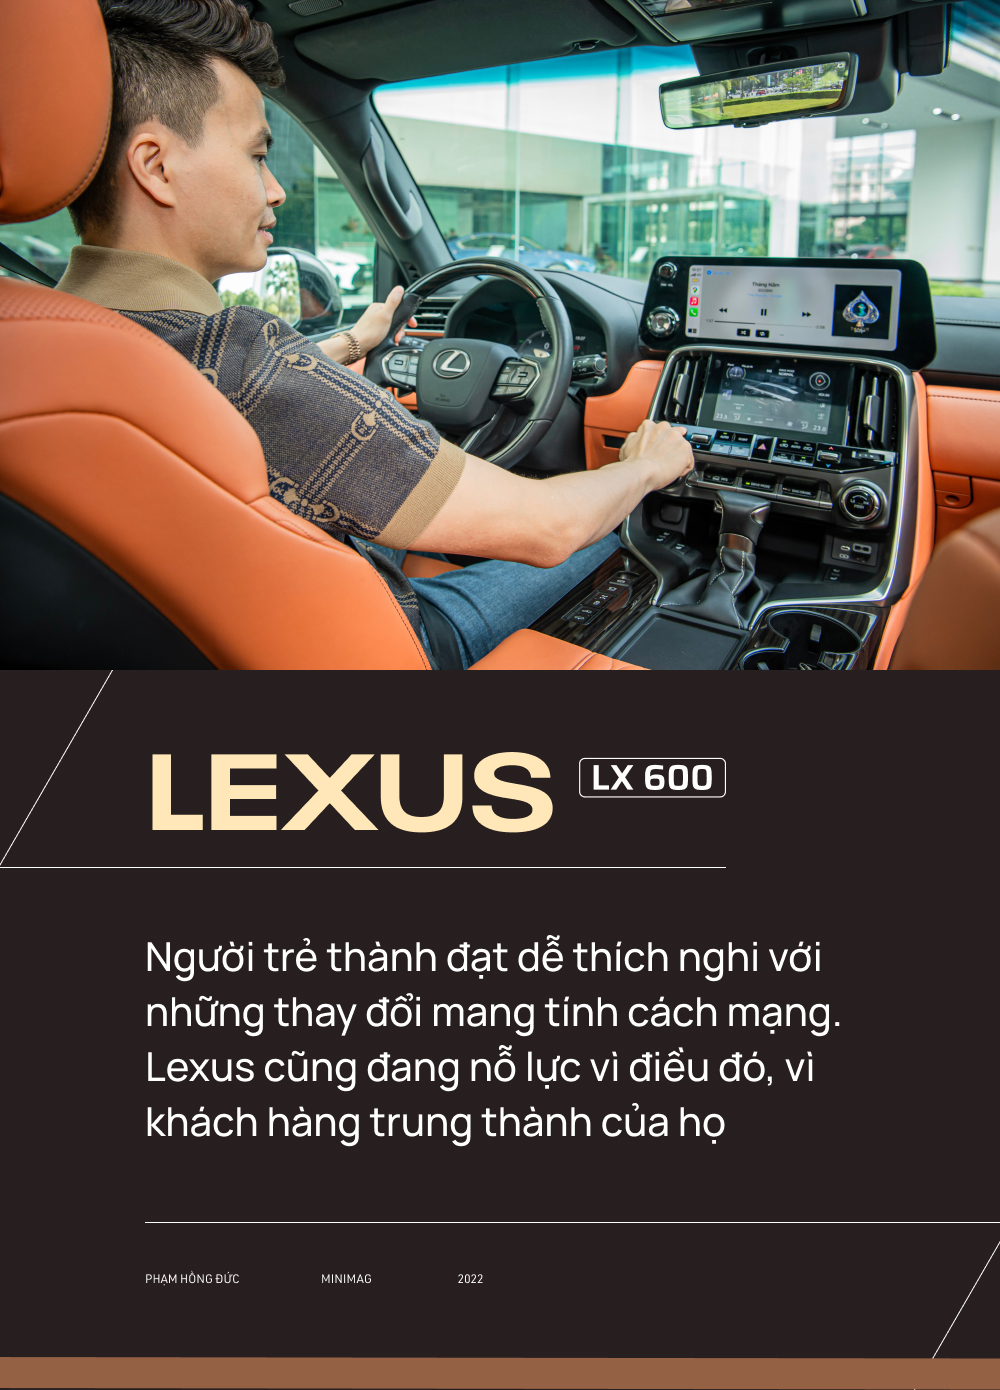 Từ Innova qua 3 đời Lexus, bác sĩ 8X chọn tiếp LX 600: ‘Dùng Lexus rồi khó sang thương hiệu khác’ - Ảnh 17.